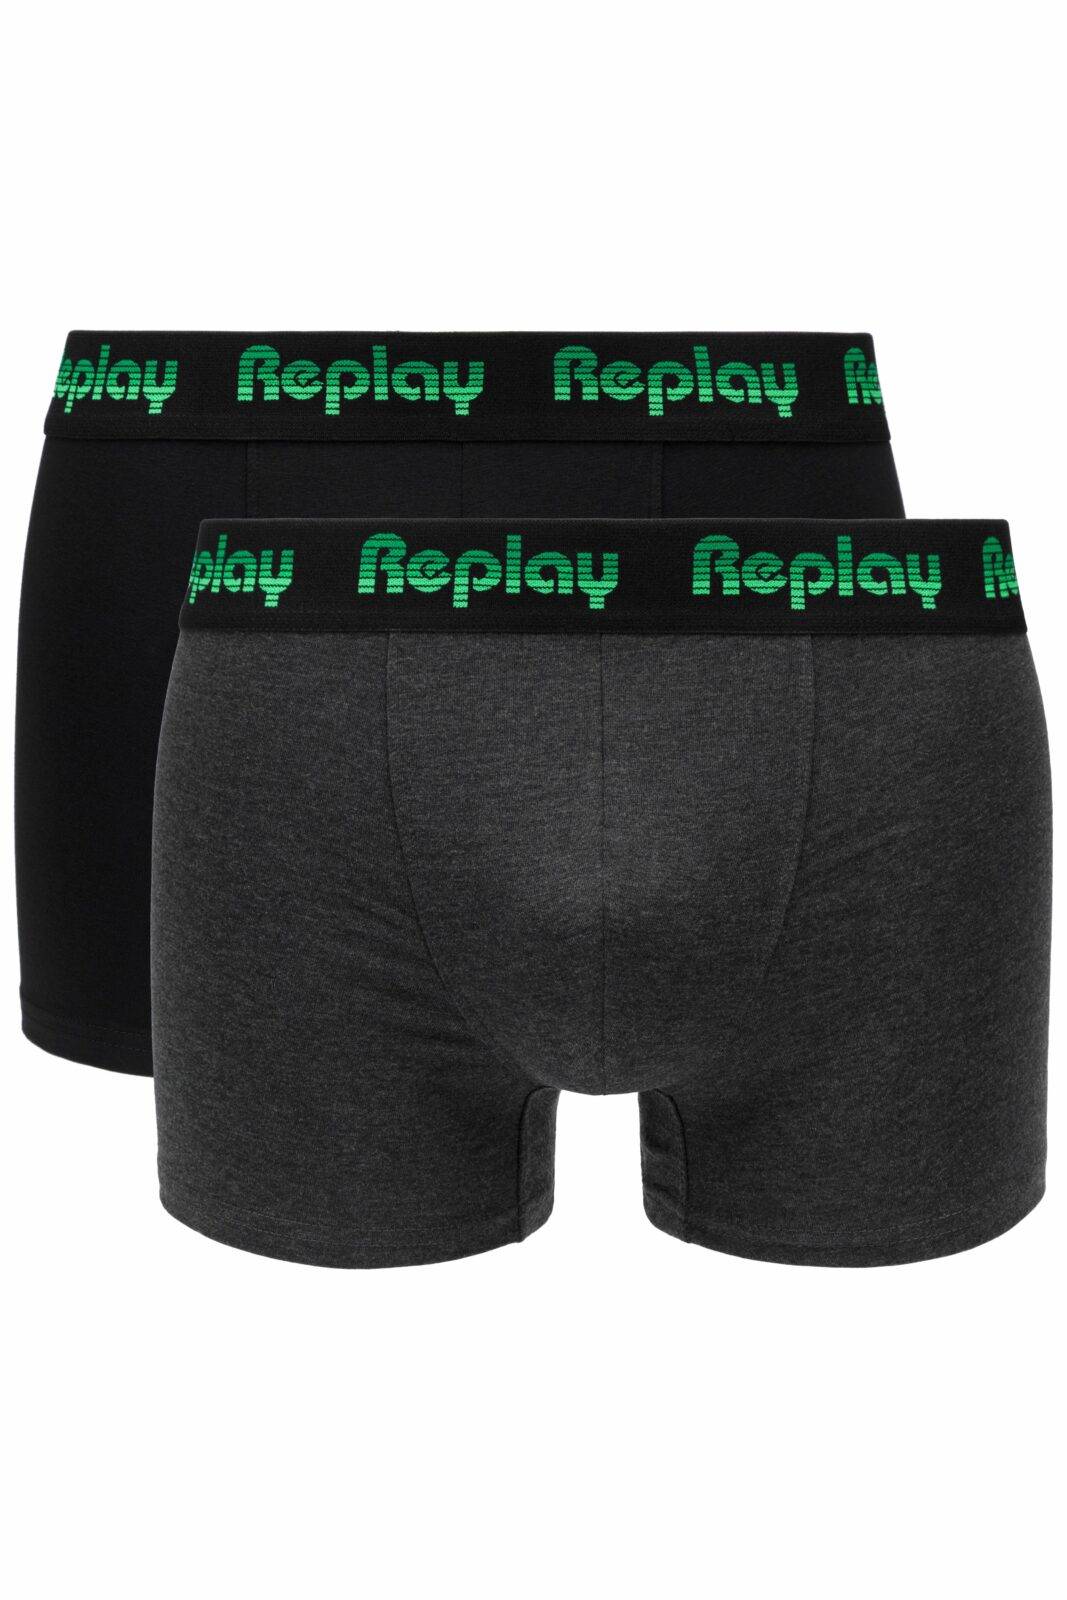 Replay Boxerky Boxer Style 5 Jacquard Logo 2Pcs Box